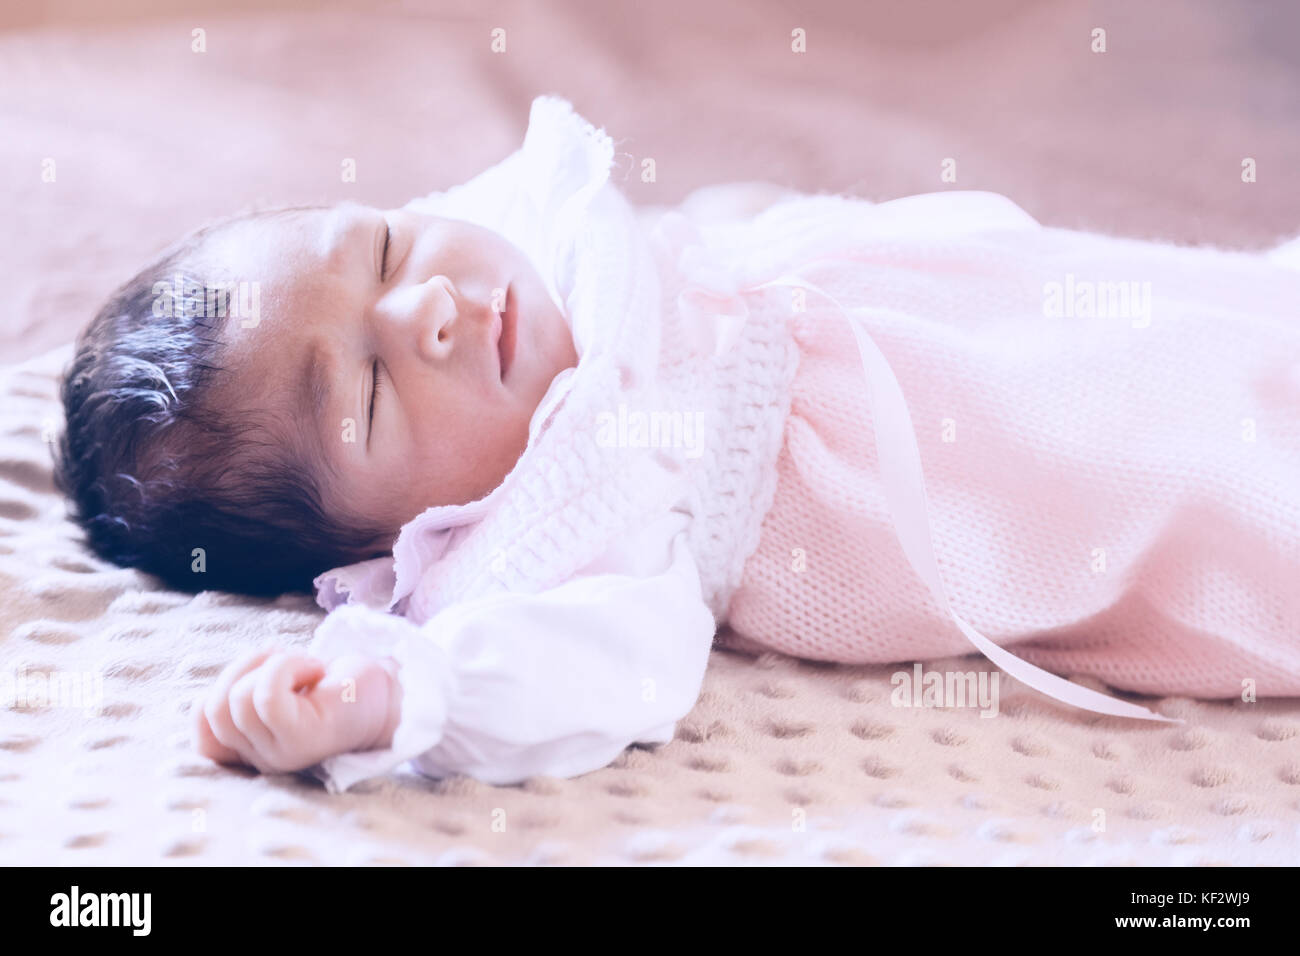 Deux semaines au nouveau-né cute baby girl rose doux vêtements tricotés, dormir paisiblement dans son lit / Naissance bebe Fille Dormir dormir couchette enfant Banque D'Images